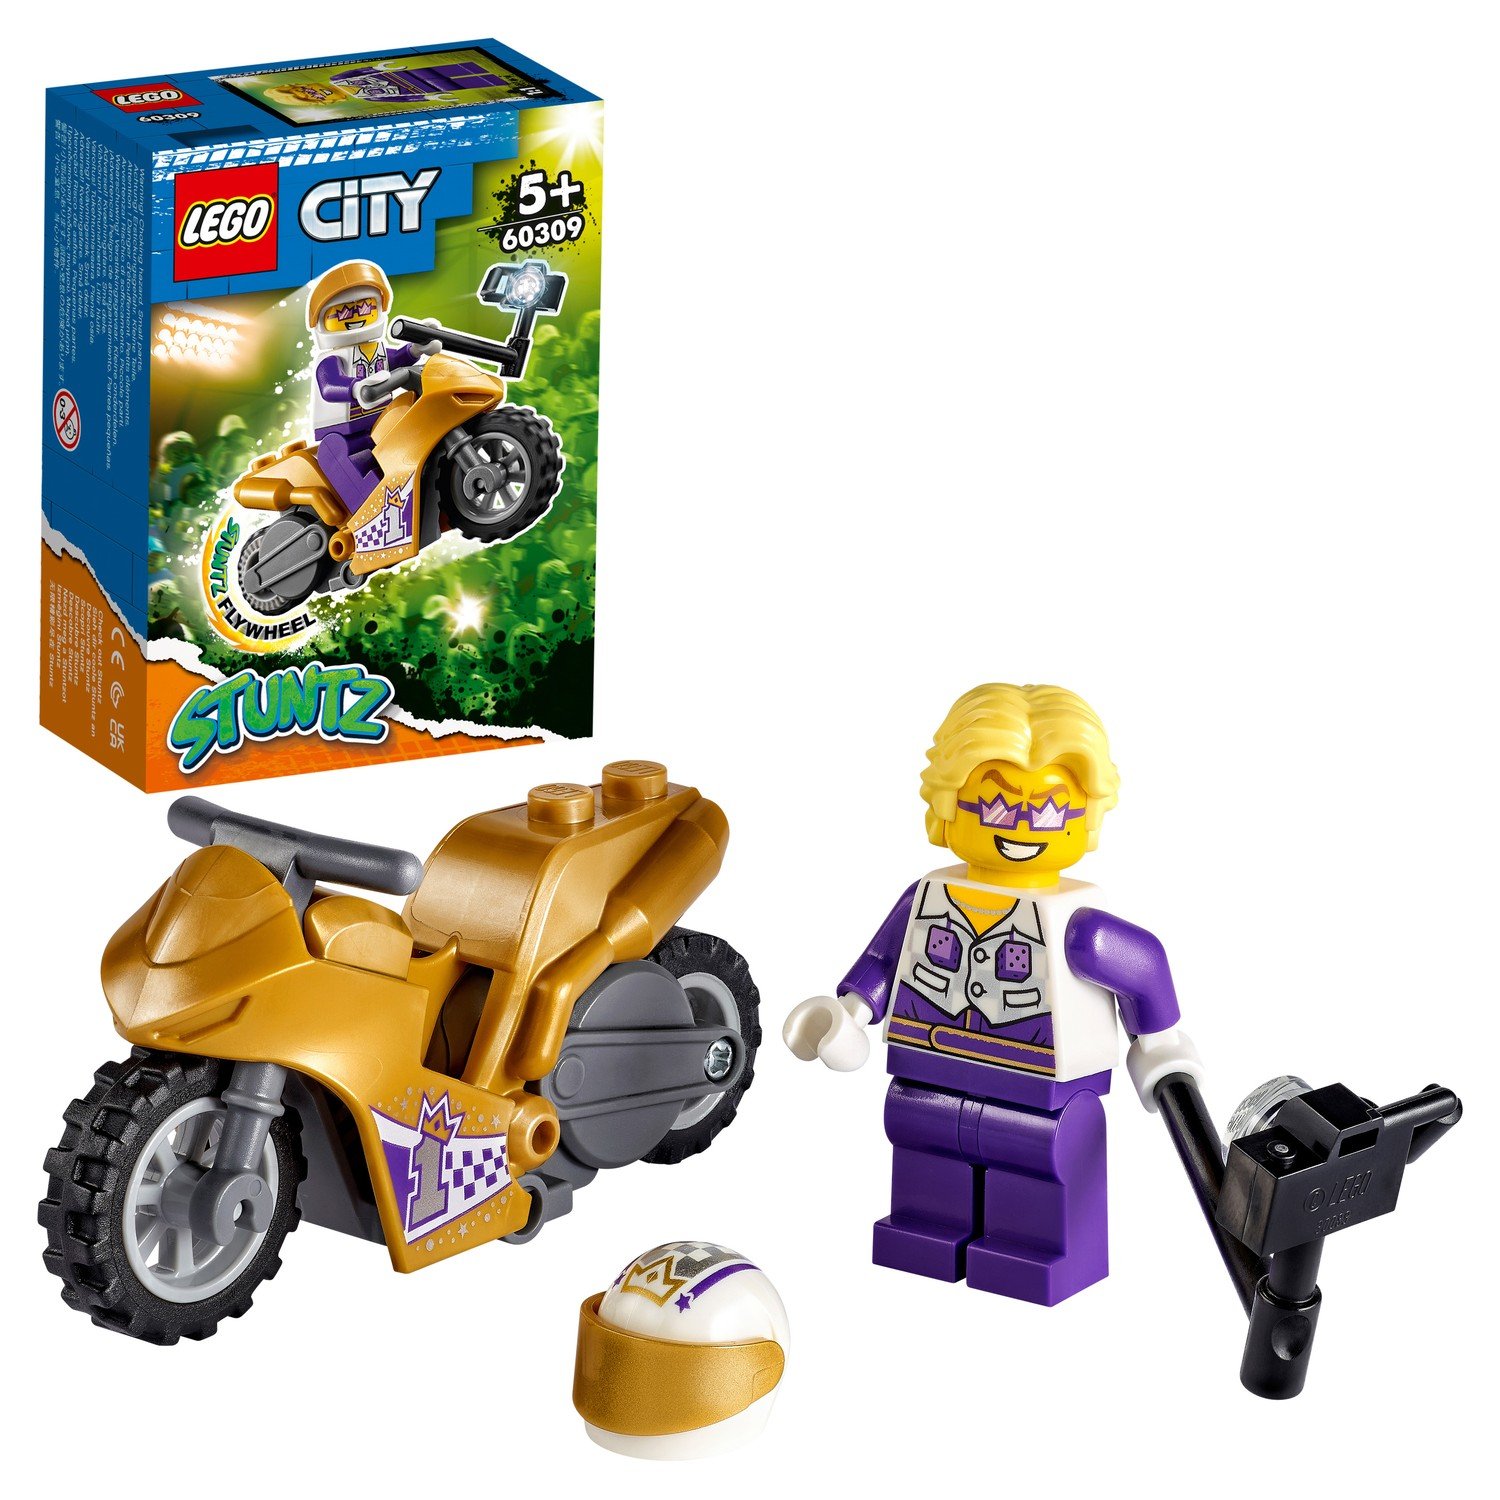 Конструктор LEGO City 60309 Трюковый мотоцикл с экшн-камерой